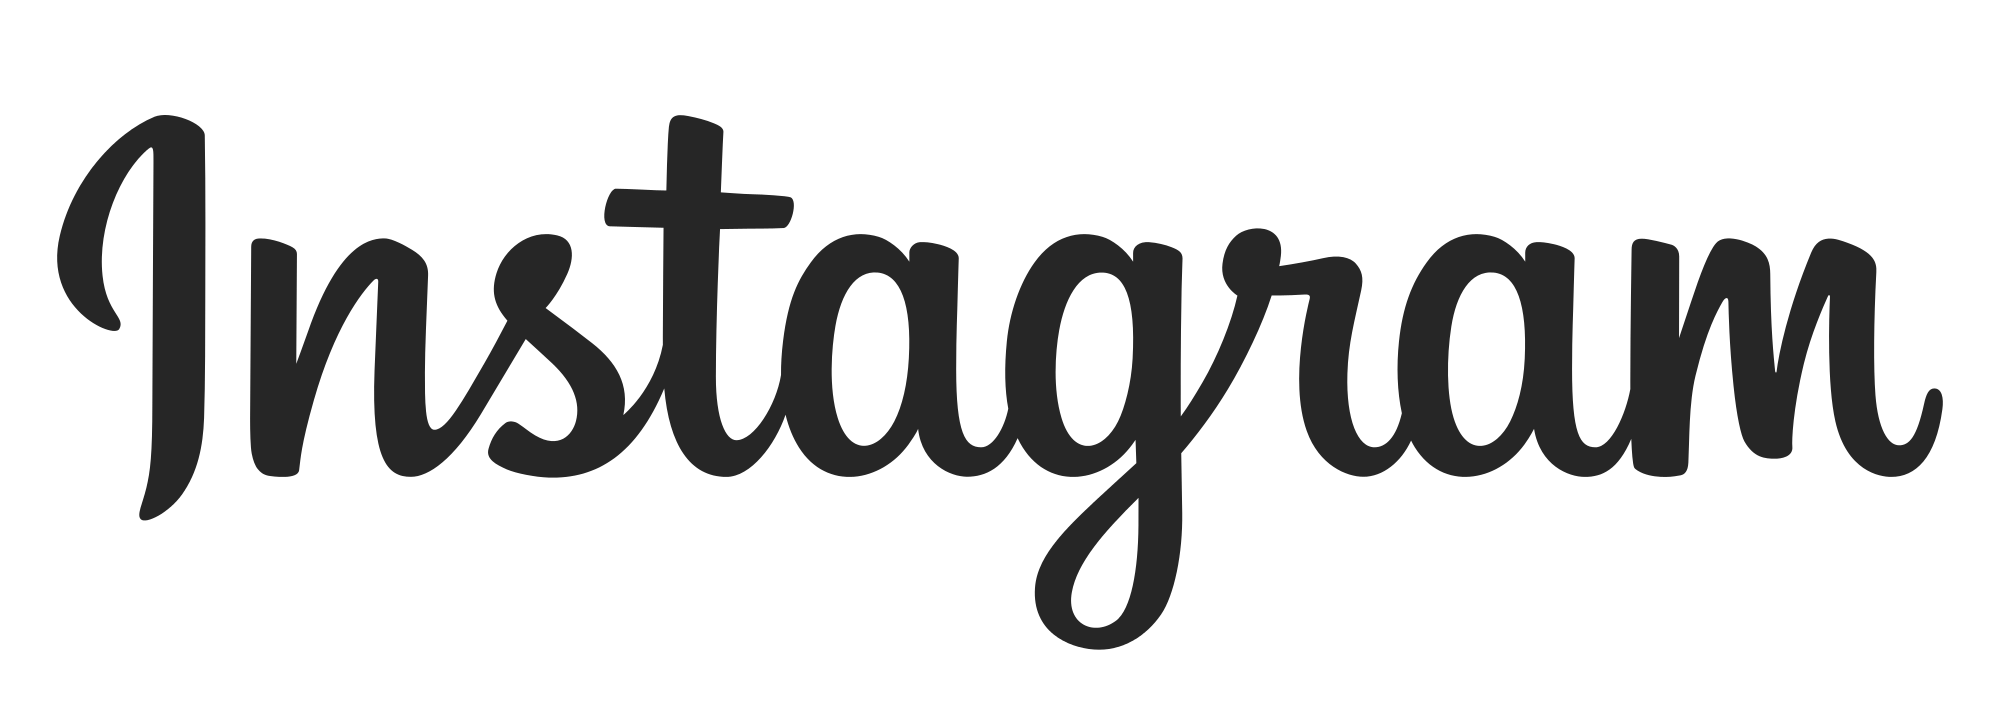 Instagram IG logo PNG Gambar Transparan